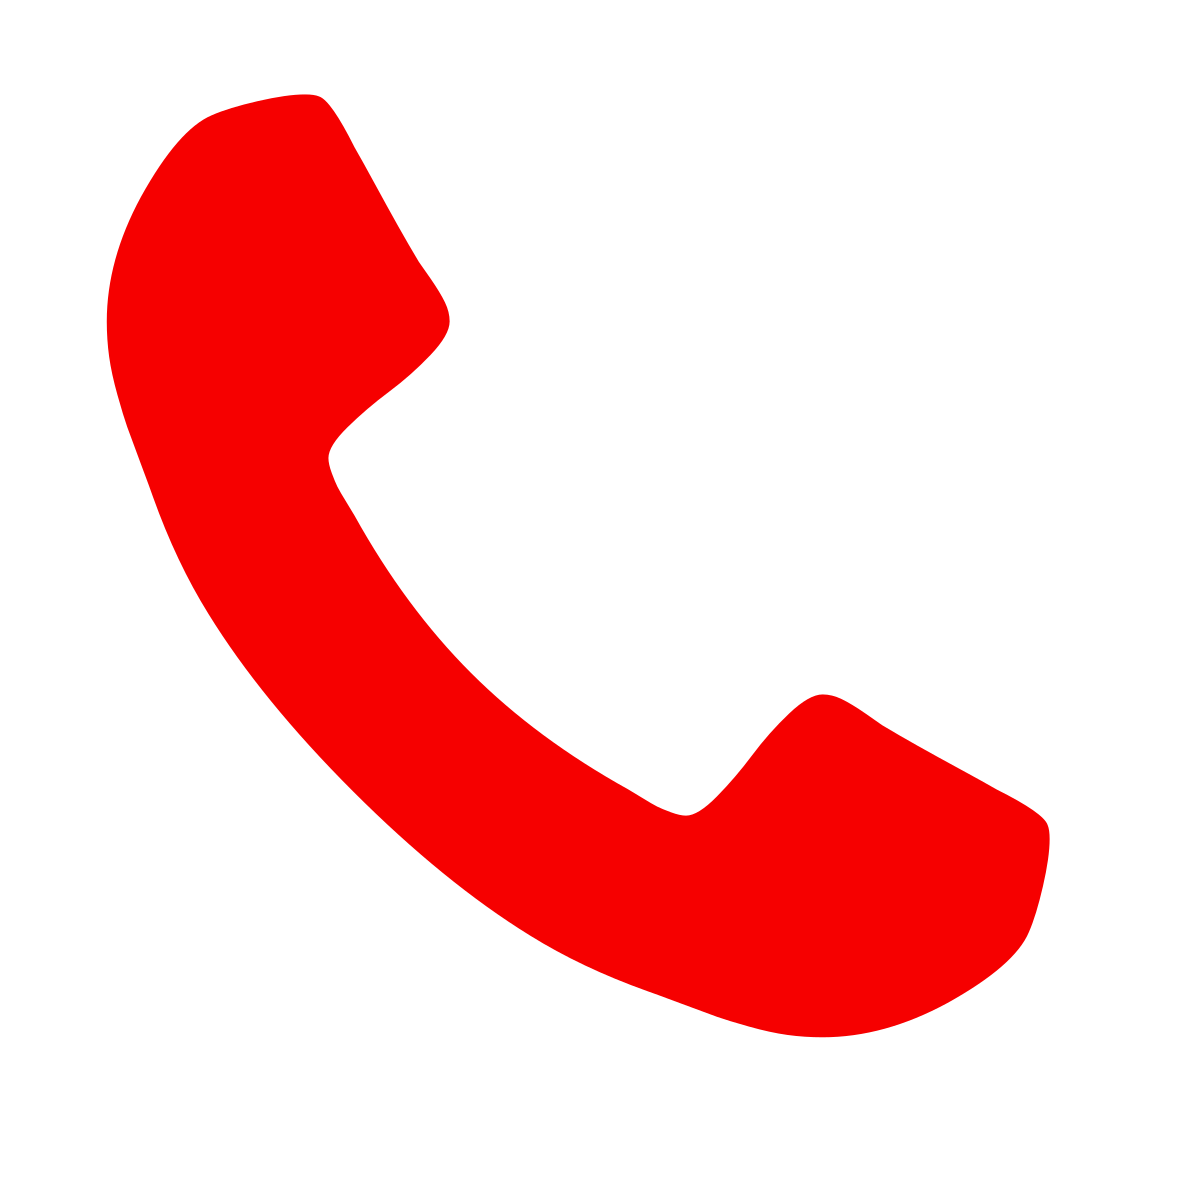 Red Phone Font Awesome Icon: Nếu bạn đang muốn thể hiện sự nổi bật và độc đáo cho ứng dụng của mình, Red Phone Font Awesome Icon là lựa chọn tuyệt vời. Với màu sắc đỏ rực và thiết kế độc đáo, icon này sẽ giúp ứng dụng của bạn nổi bật giữa đám đông và thu hút sự chú ý từ người dùng. Hãy xem hình ảnh để tìm hiểu thêm về Red Phone Font Awesome Icon.